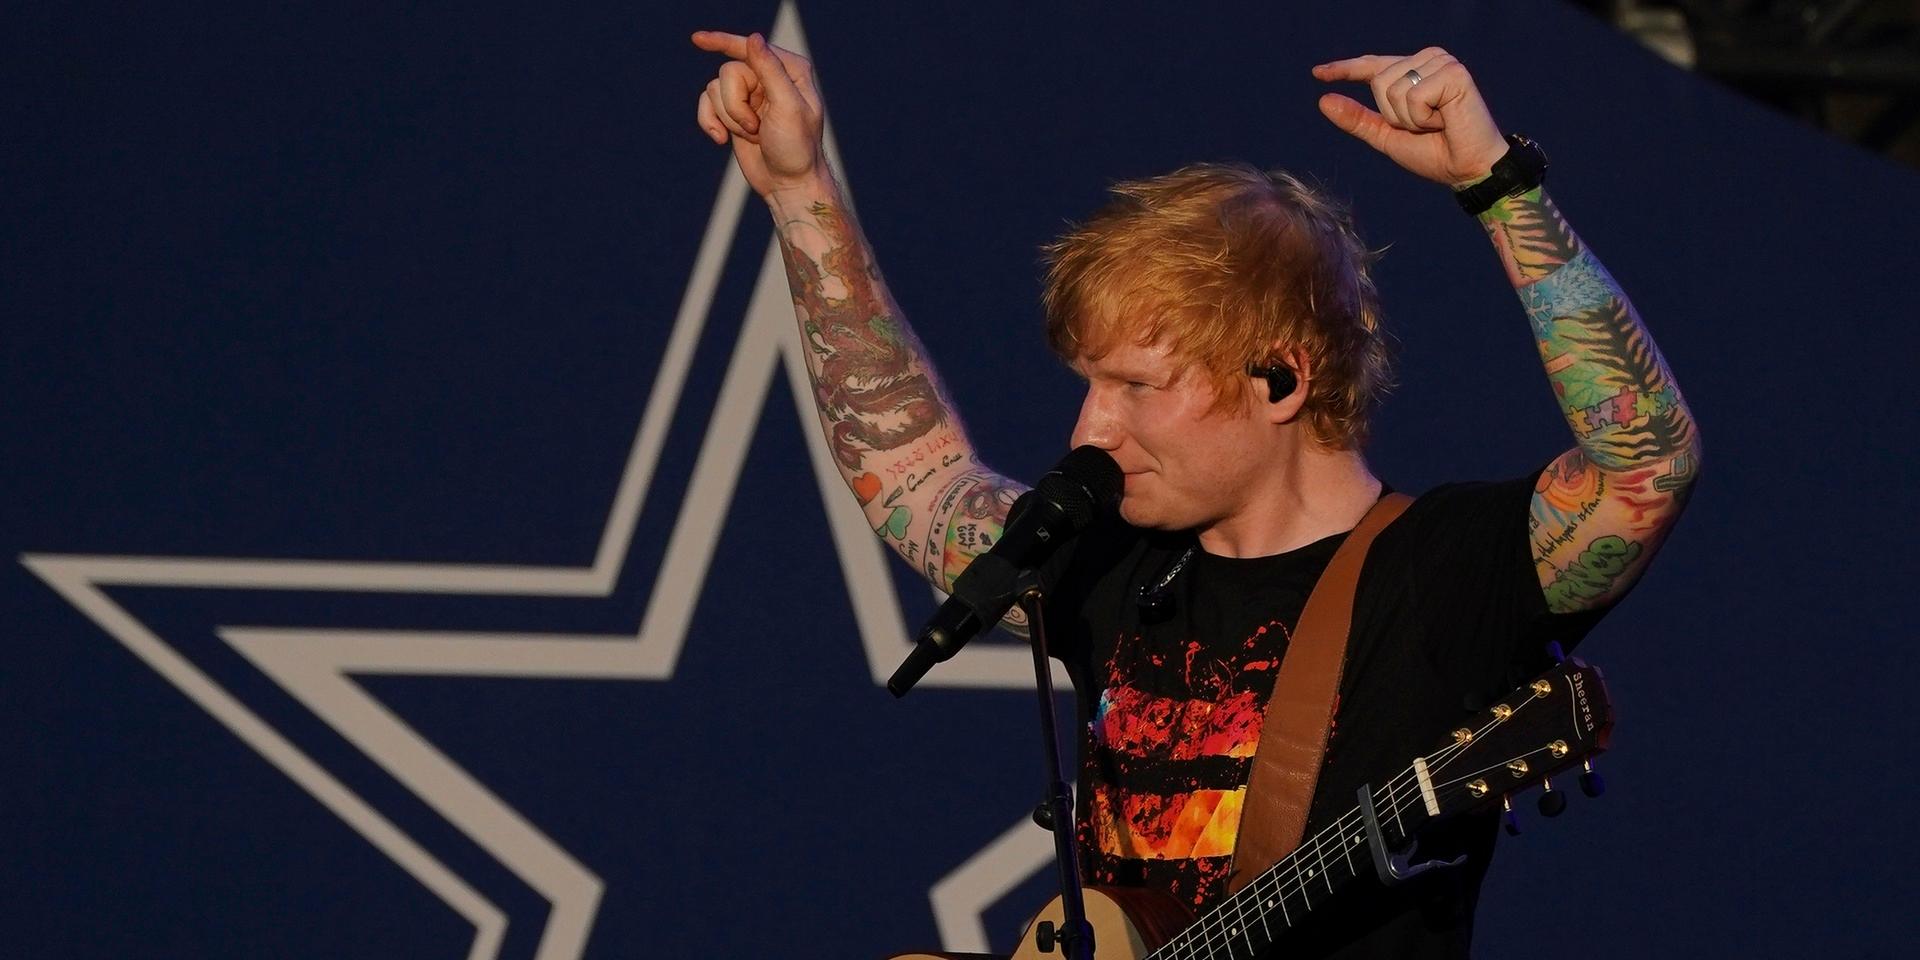 Biljetterna till Ed Sheerans konsert på Ullevi den 10 augusti nästa år sålde slut direkt. Då släpptes även billjetter till en extrakonsert dagen efter, 11 augusti.